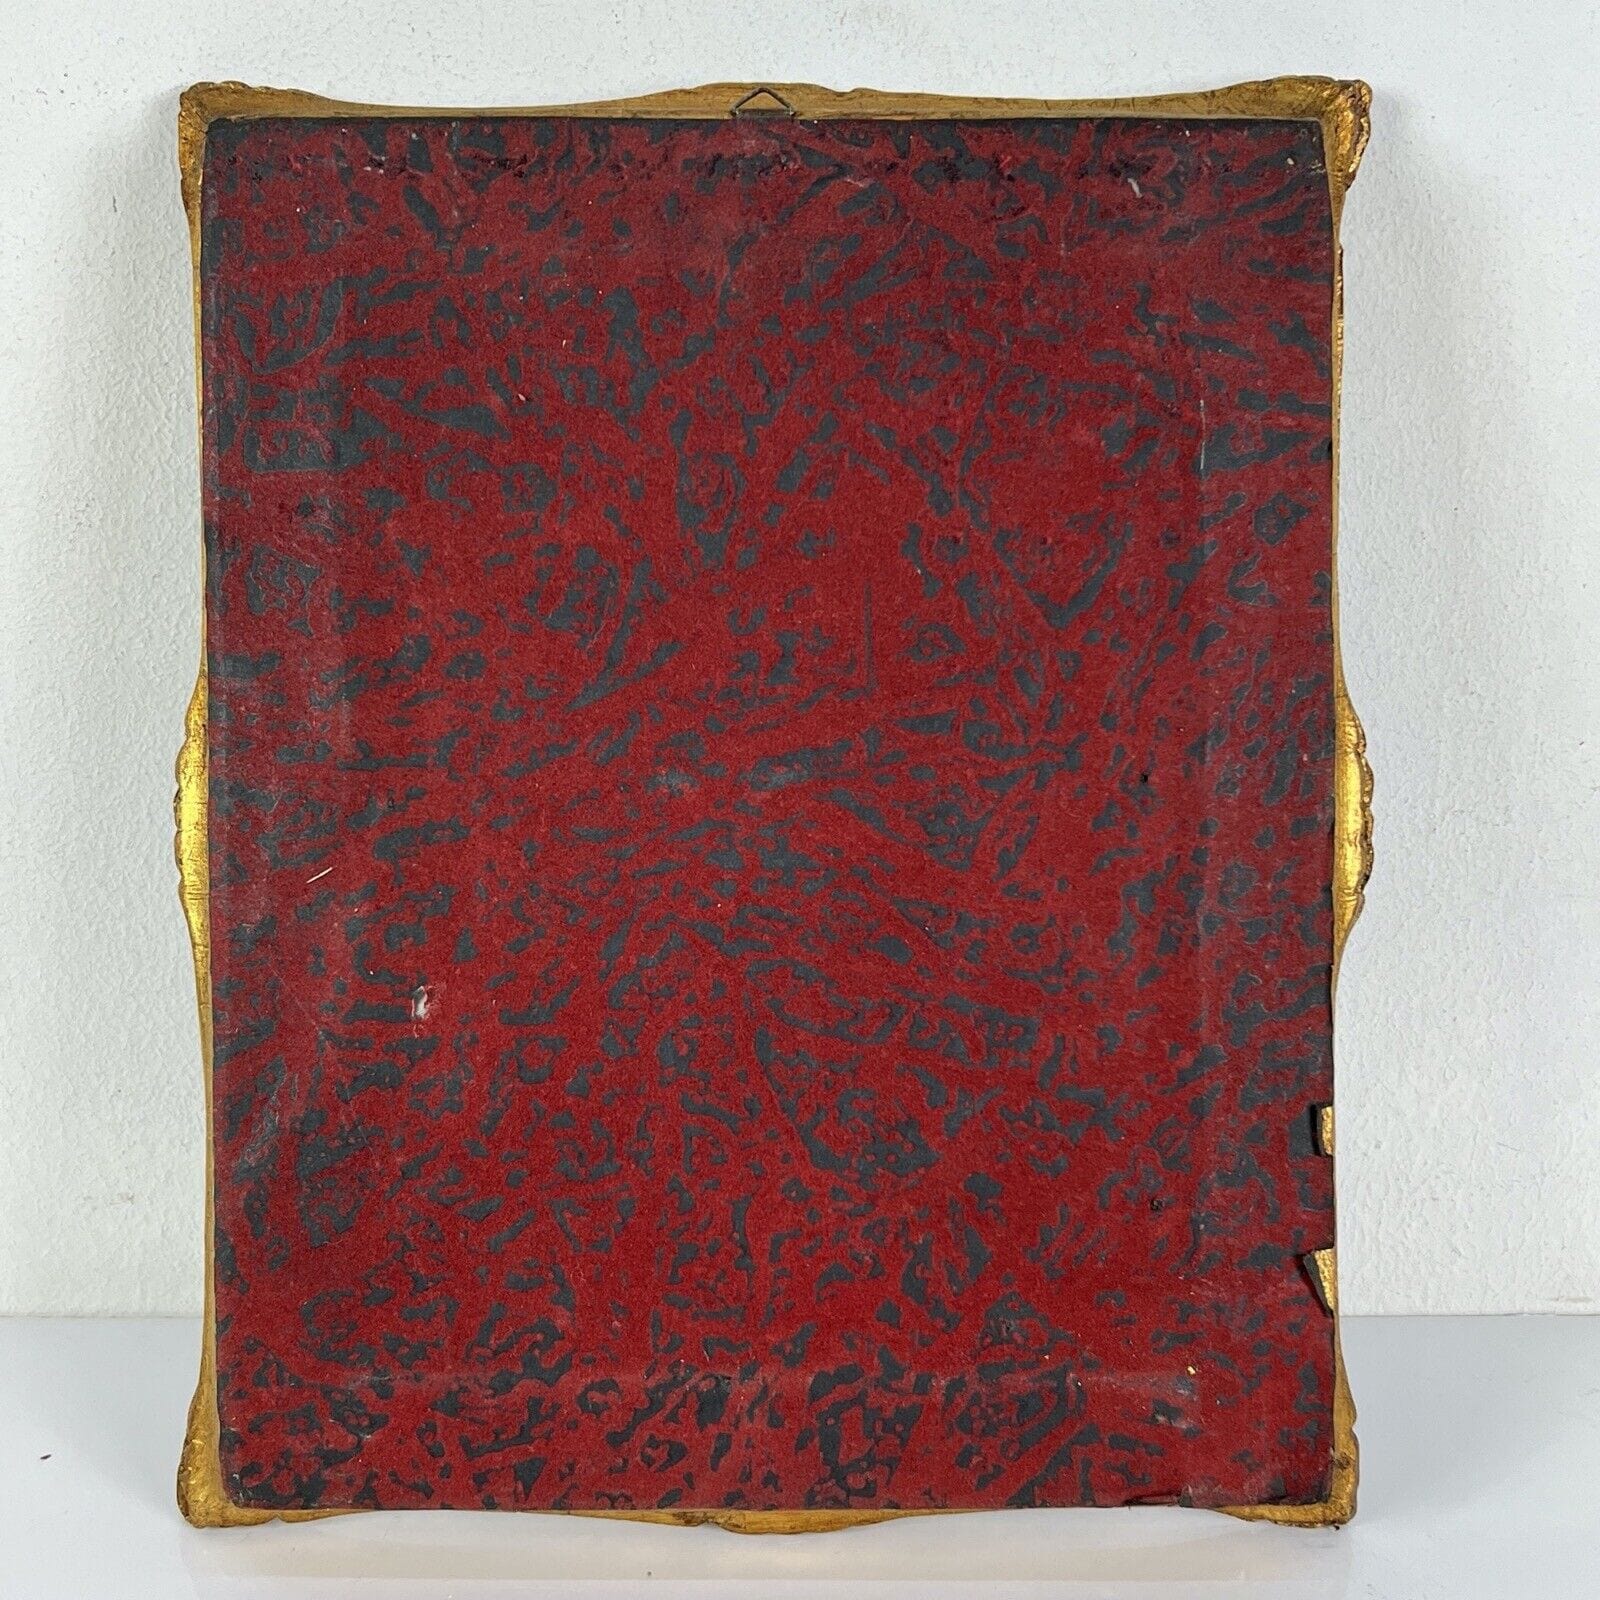 Quadro antico dipinto a olio su tavola quadretto fiori con cornice foglia oro Categoria  Quadri